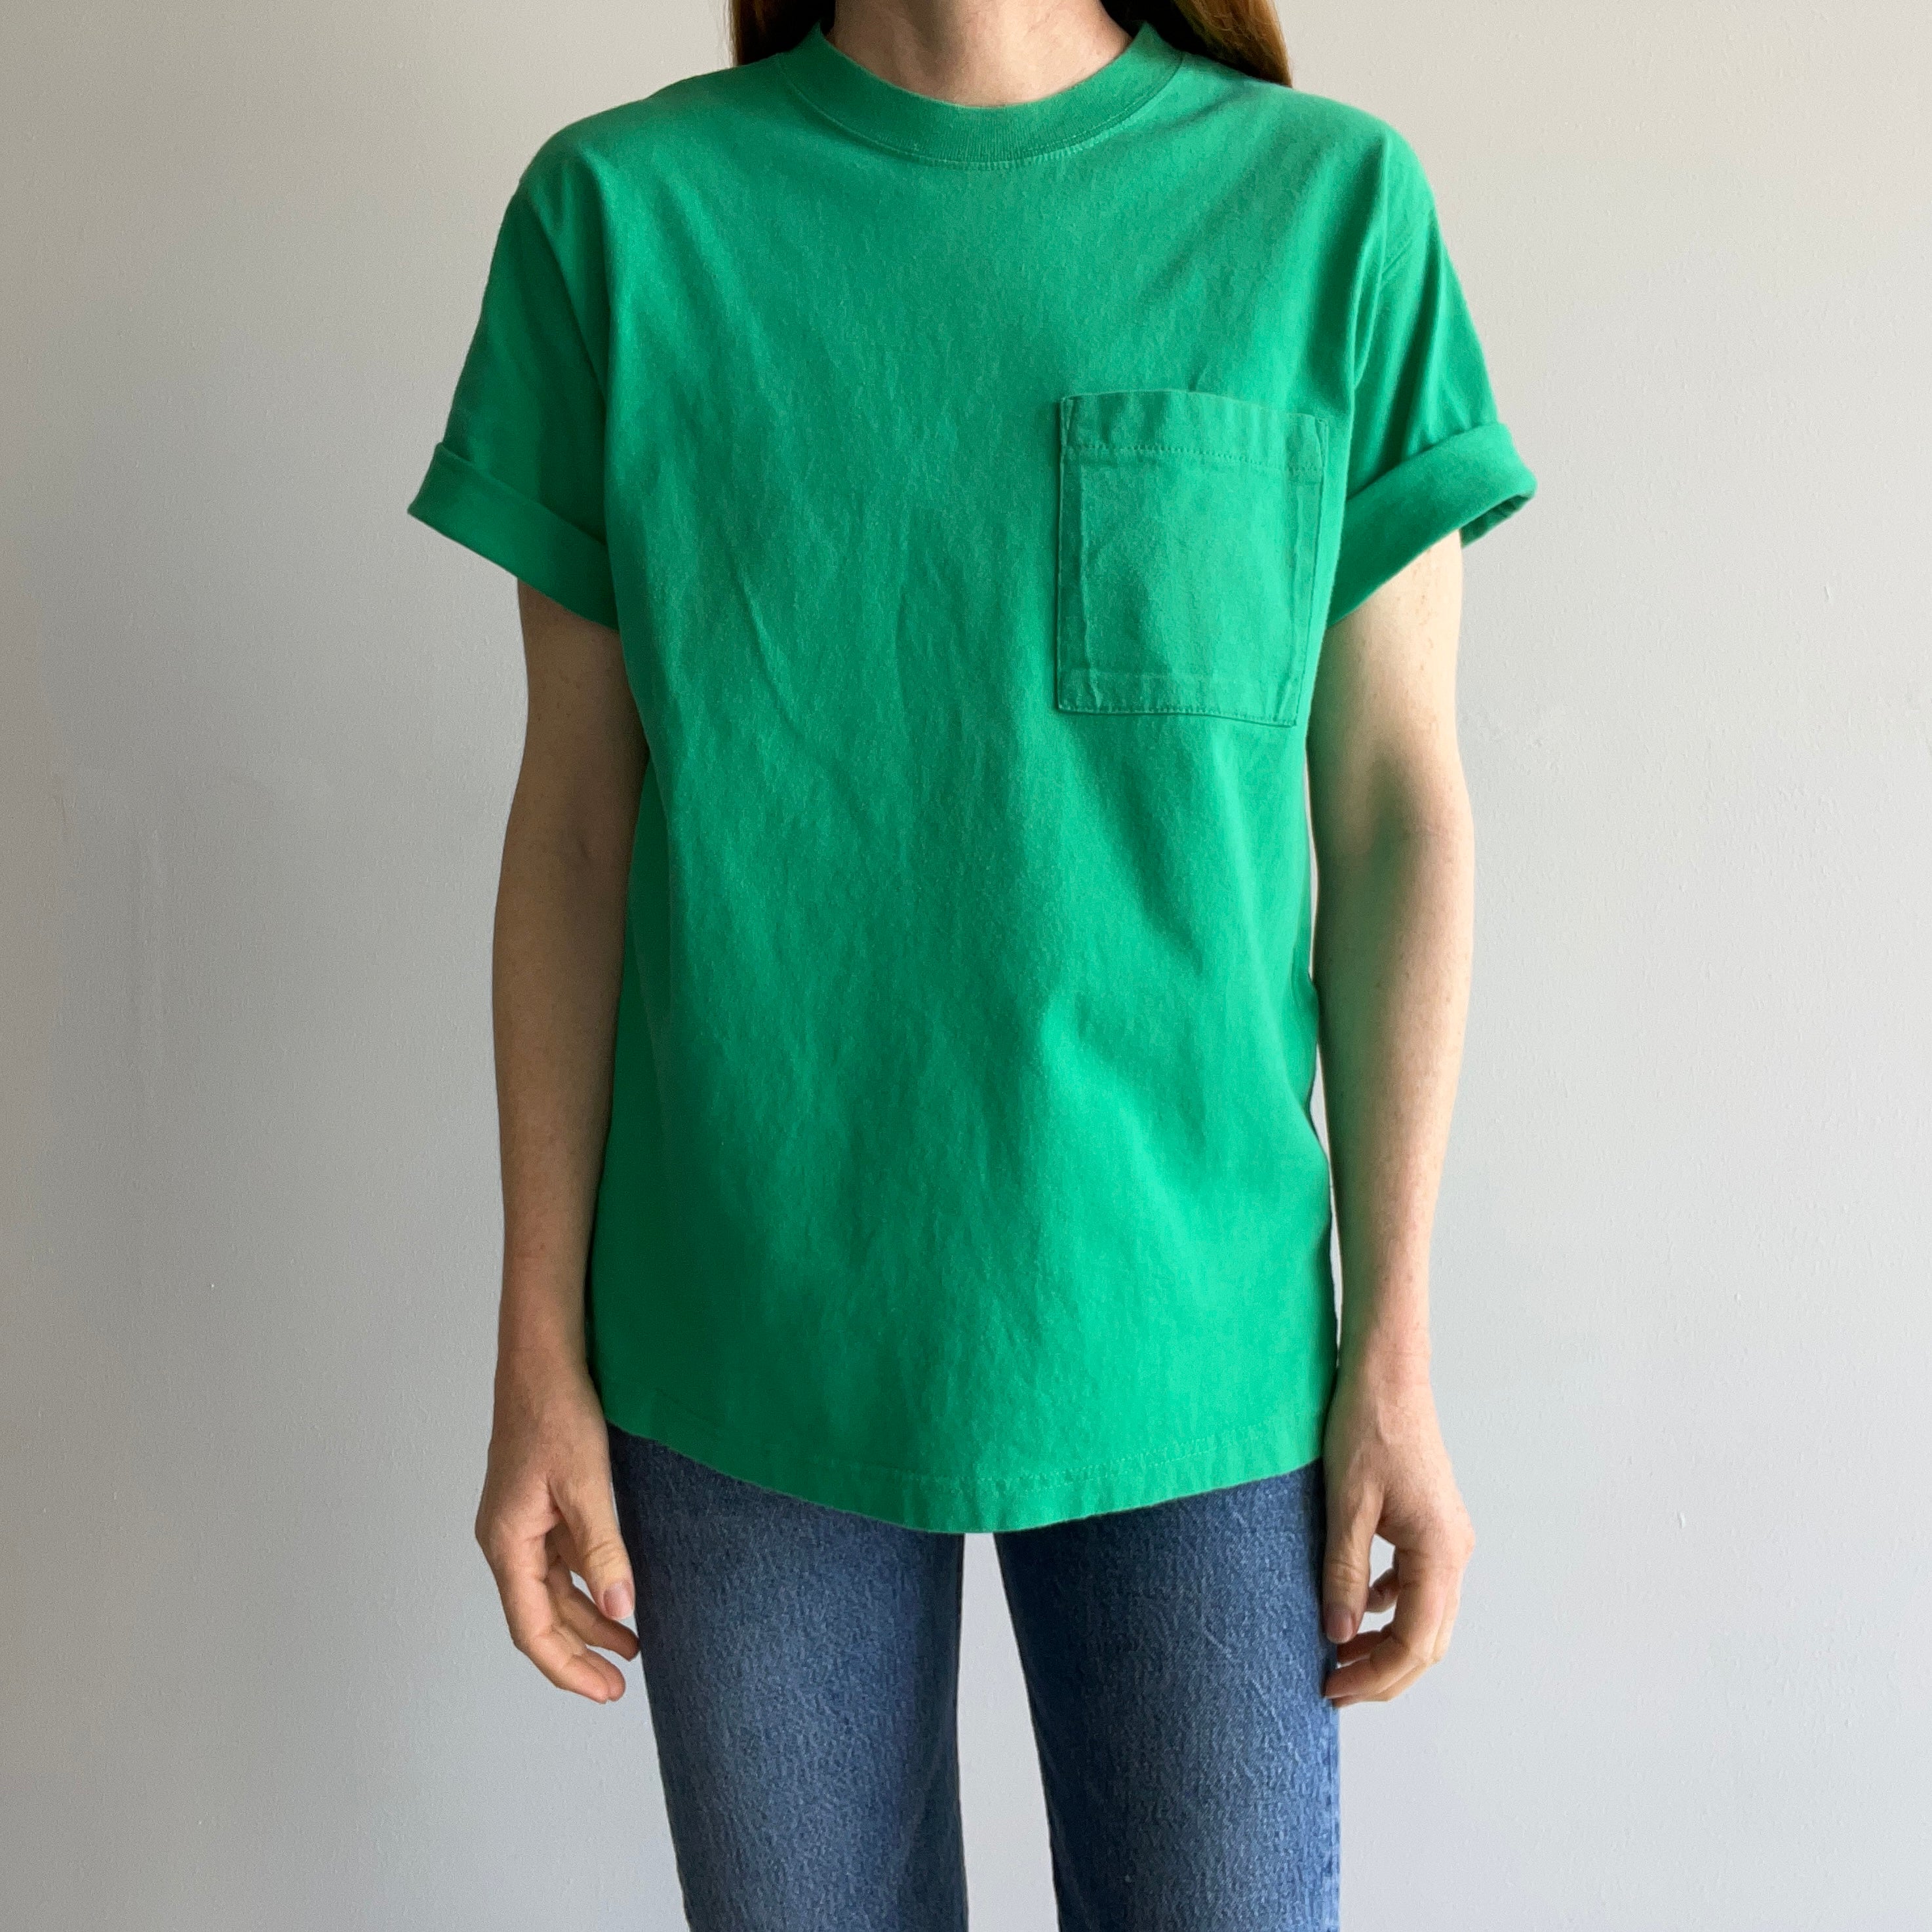 1990s Eddie Bauer Pocket Grass Green Super Soft Cotton T-shirt